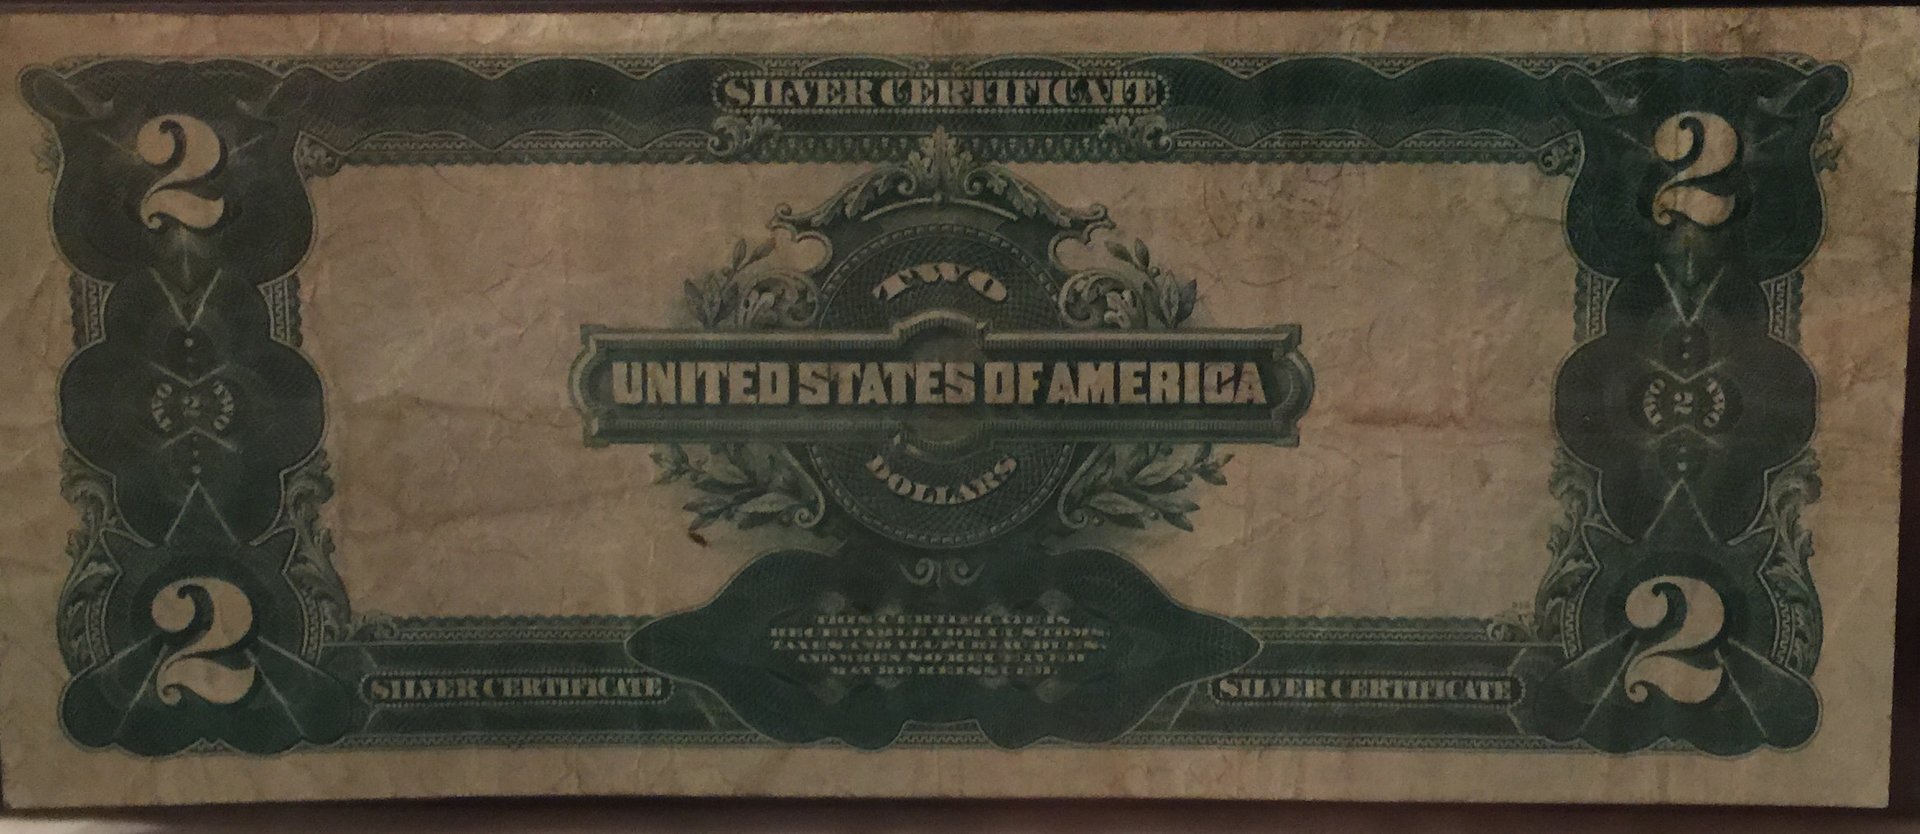 1899 $2 Silver Certificate Reverse.jpg